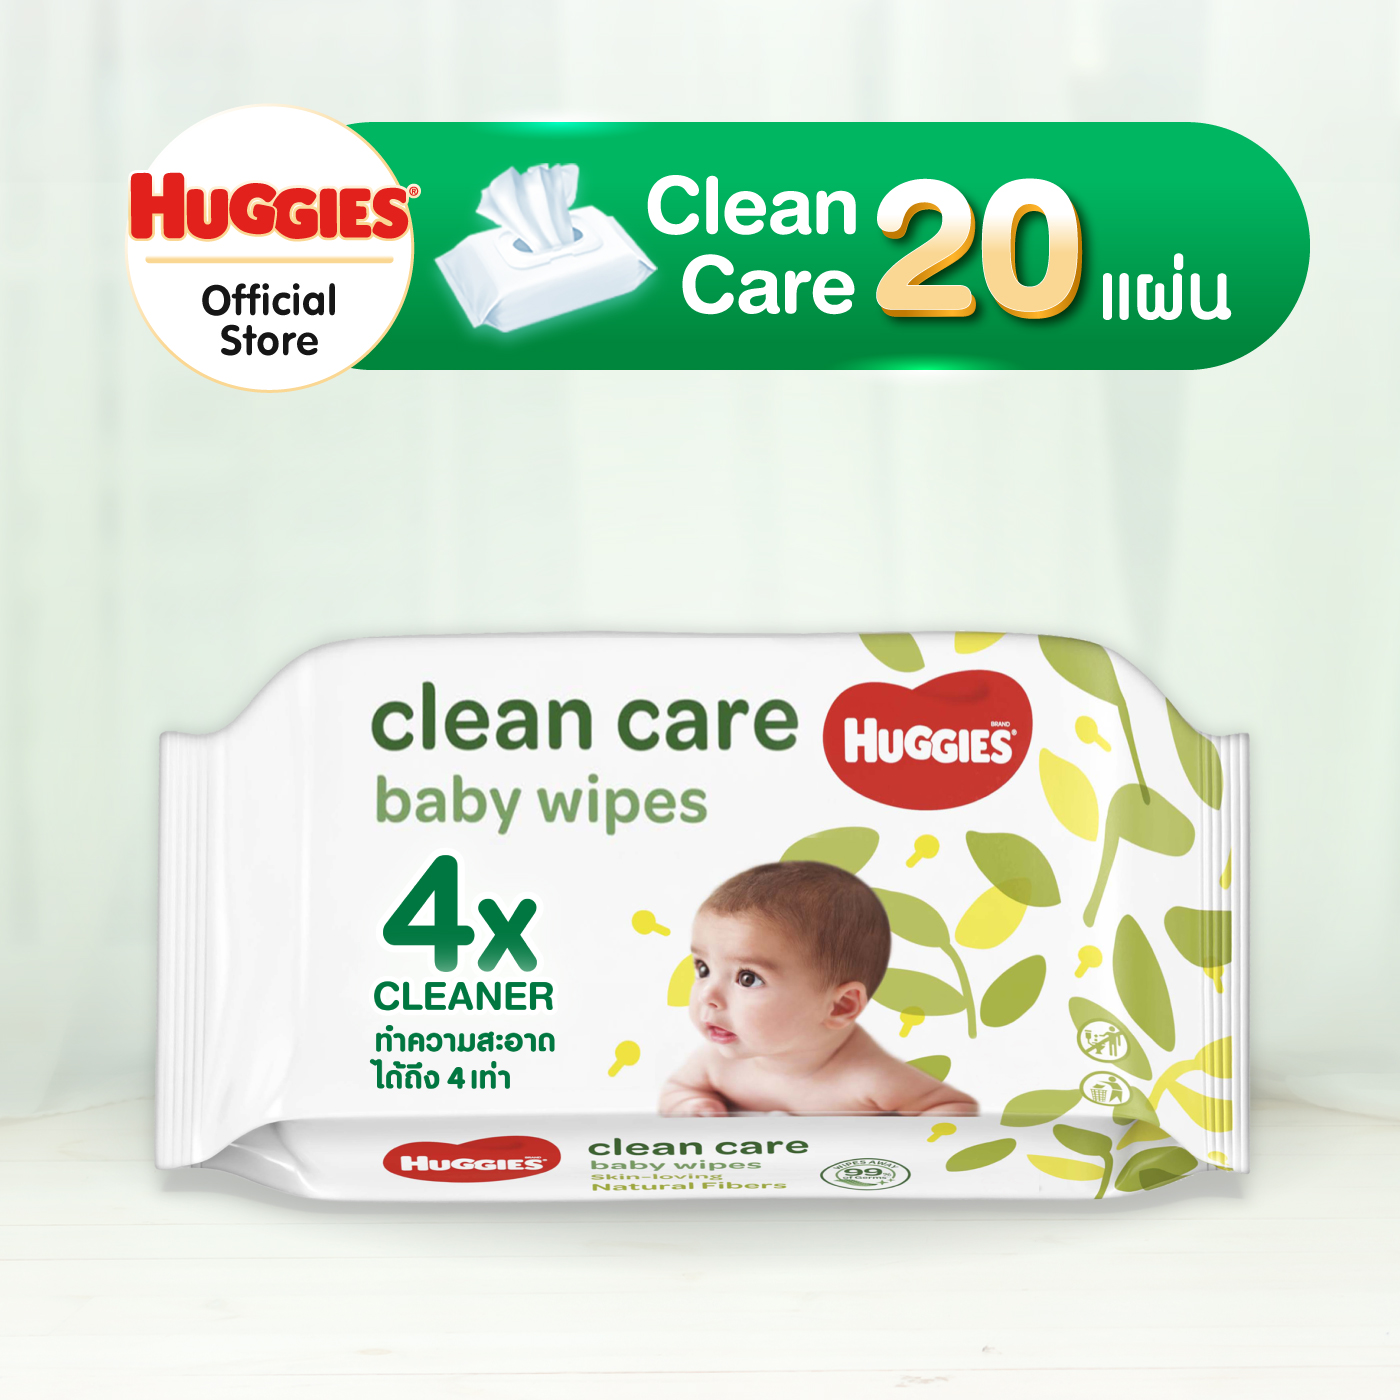 Huggies Clean Care Baby wipes ทิชชู่เปียก สำหรับเด็ก ฮักกี้ส์ คลีน แคร์ 20 แผ่น